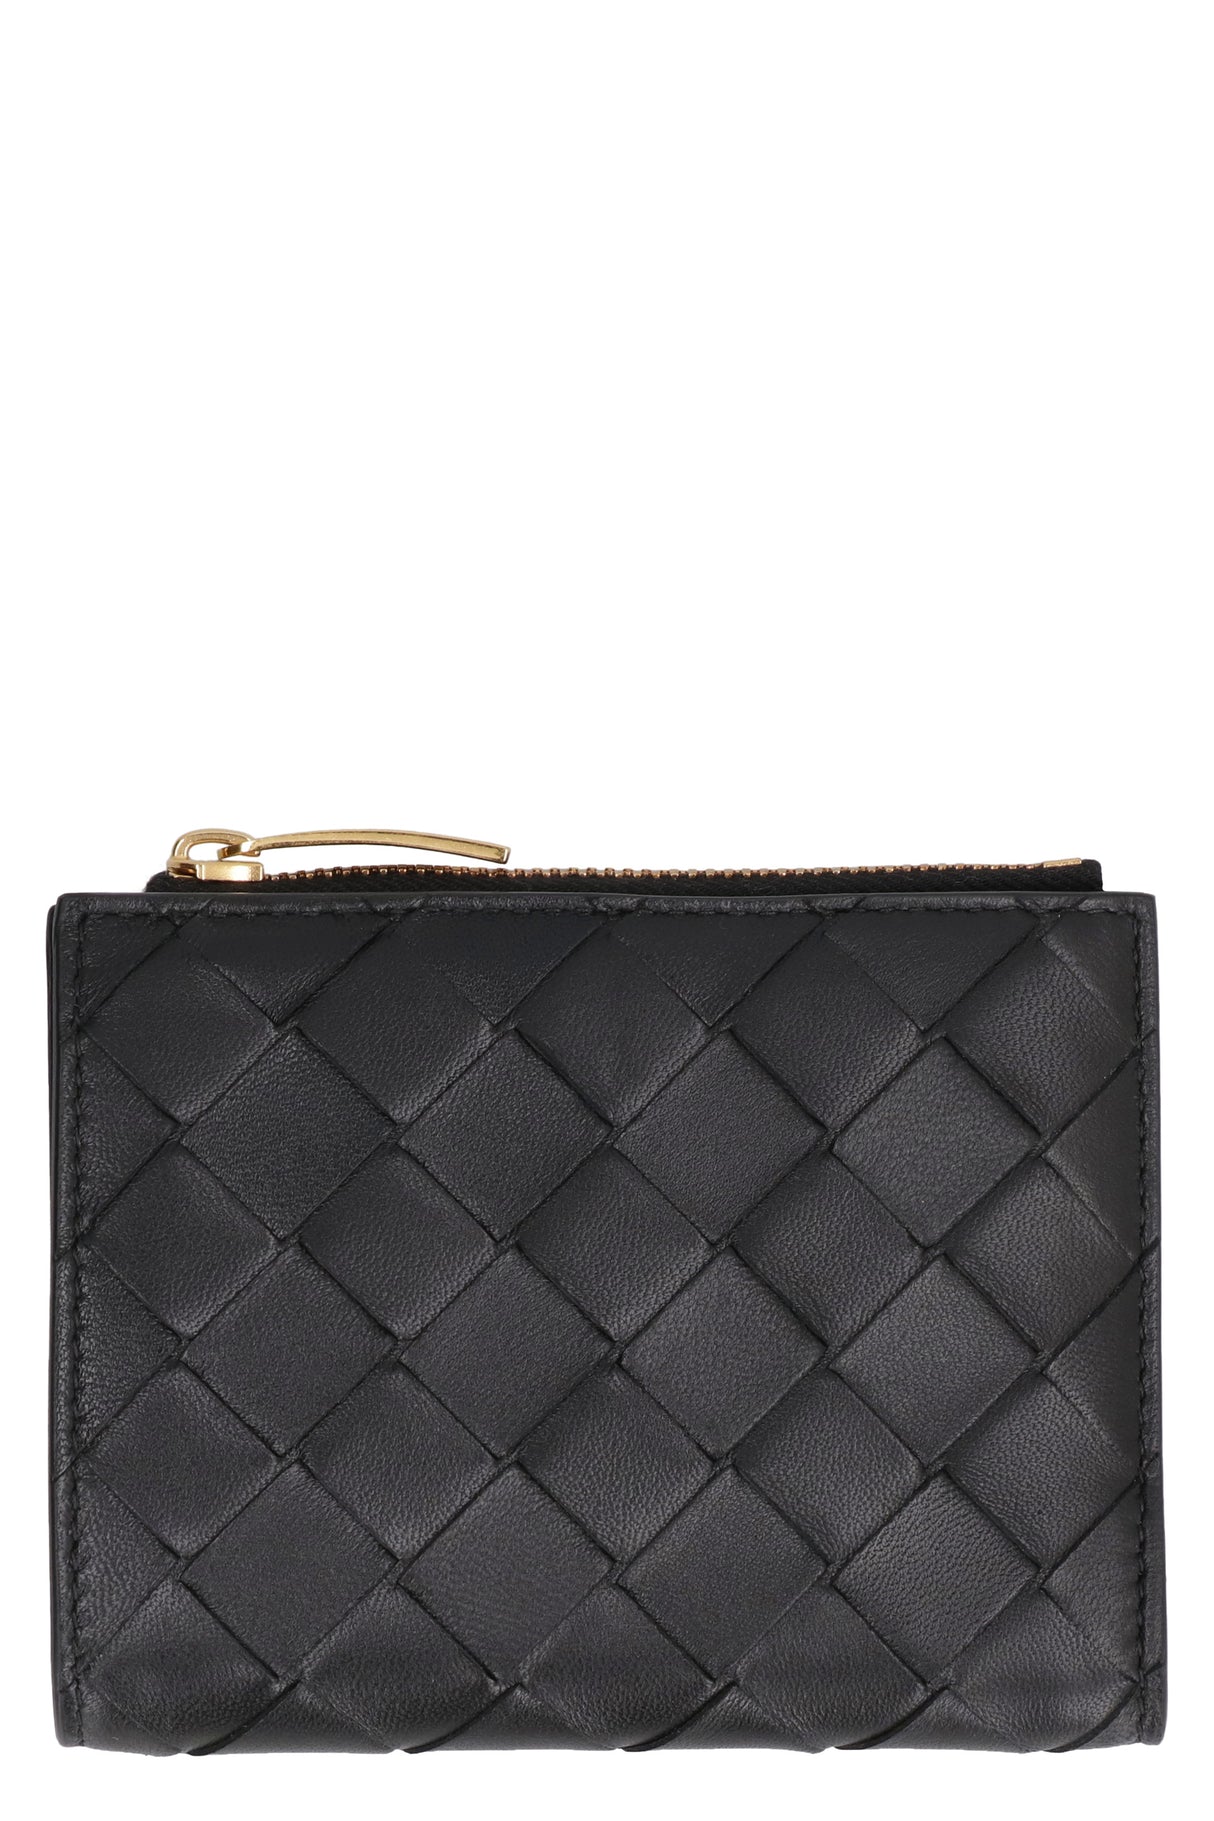 BOTTEGA VENETA Luxurious Black Leather Bi-Fold Wallet for Women - FW23 Collection